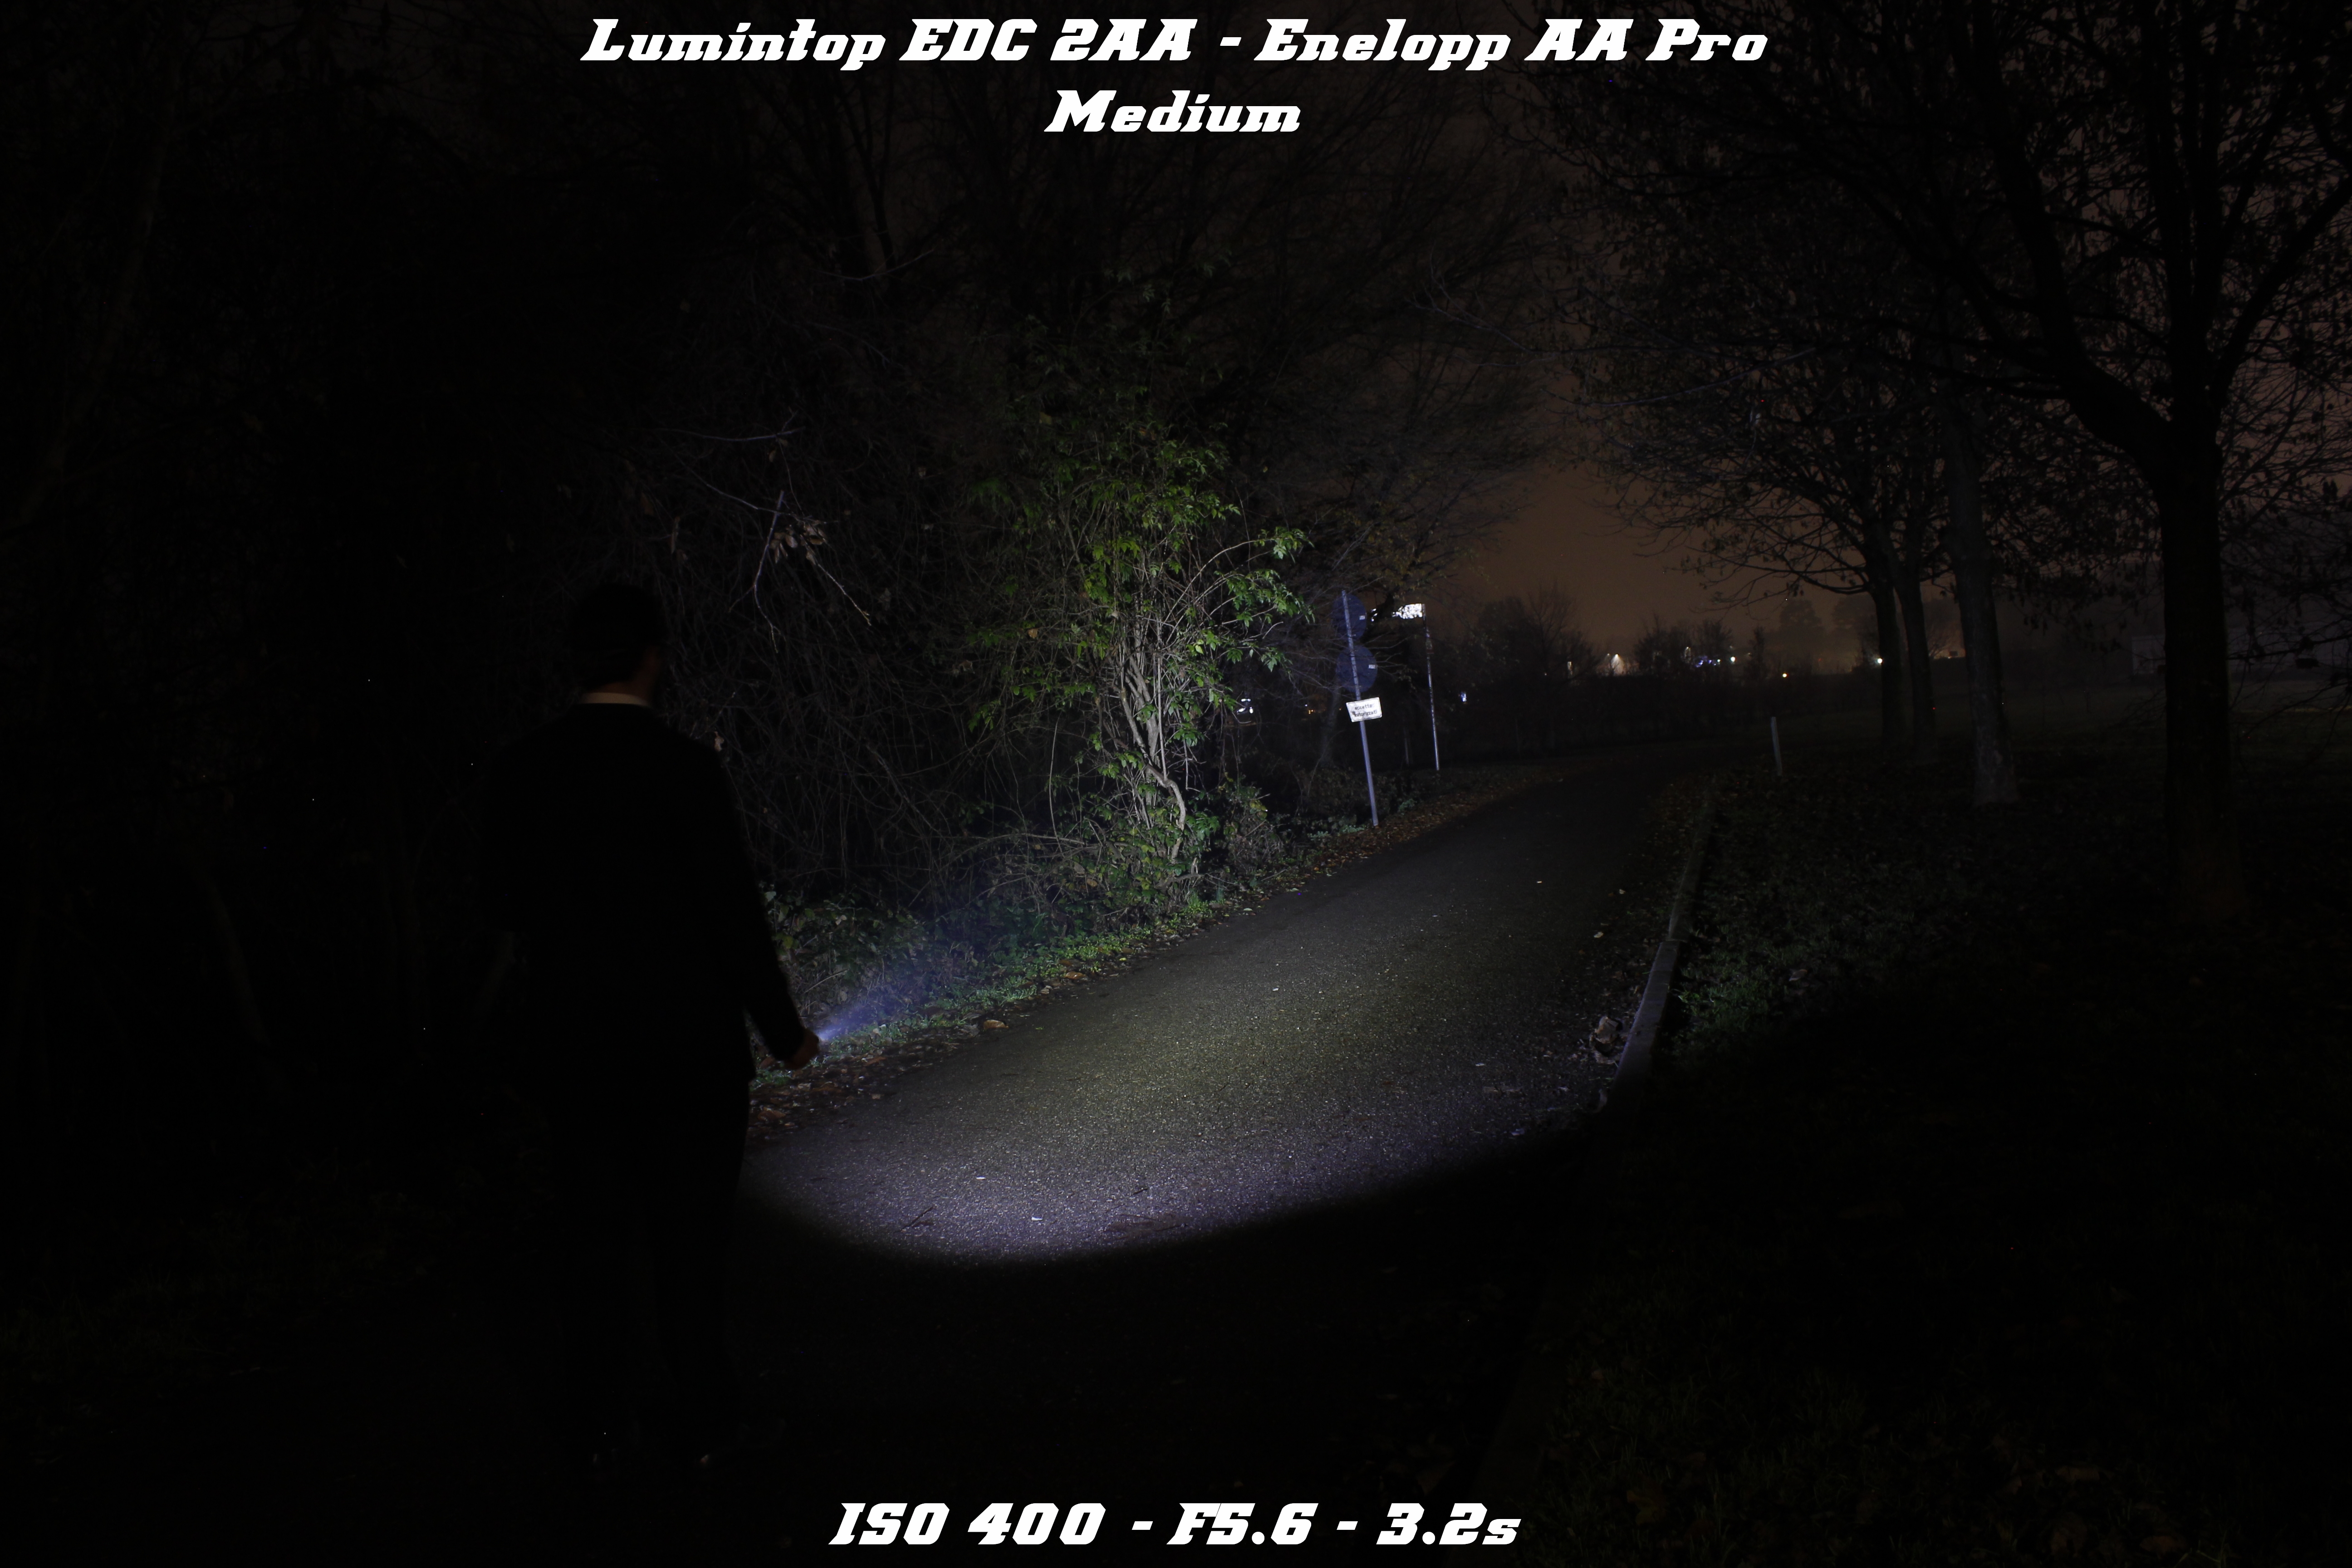 Lumintop_EDC_2AA_16.jpg